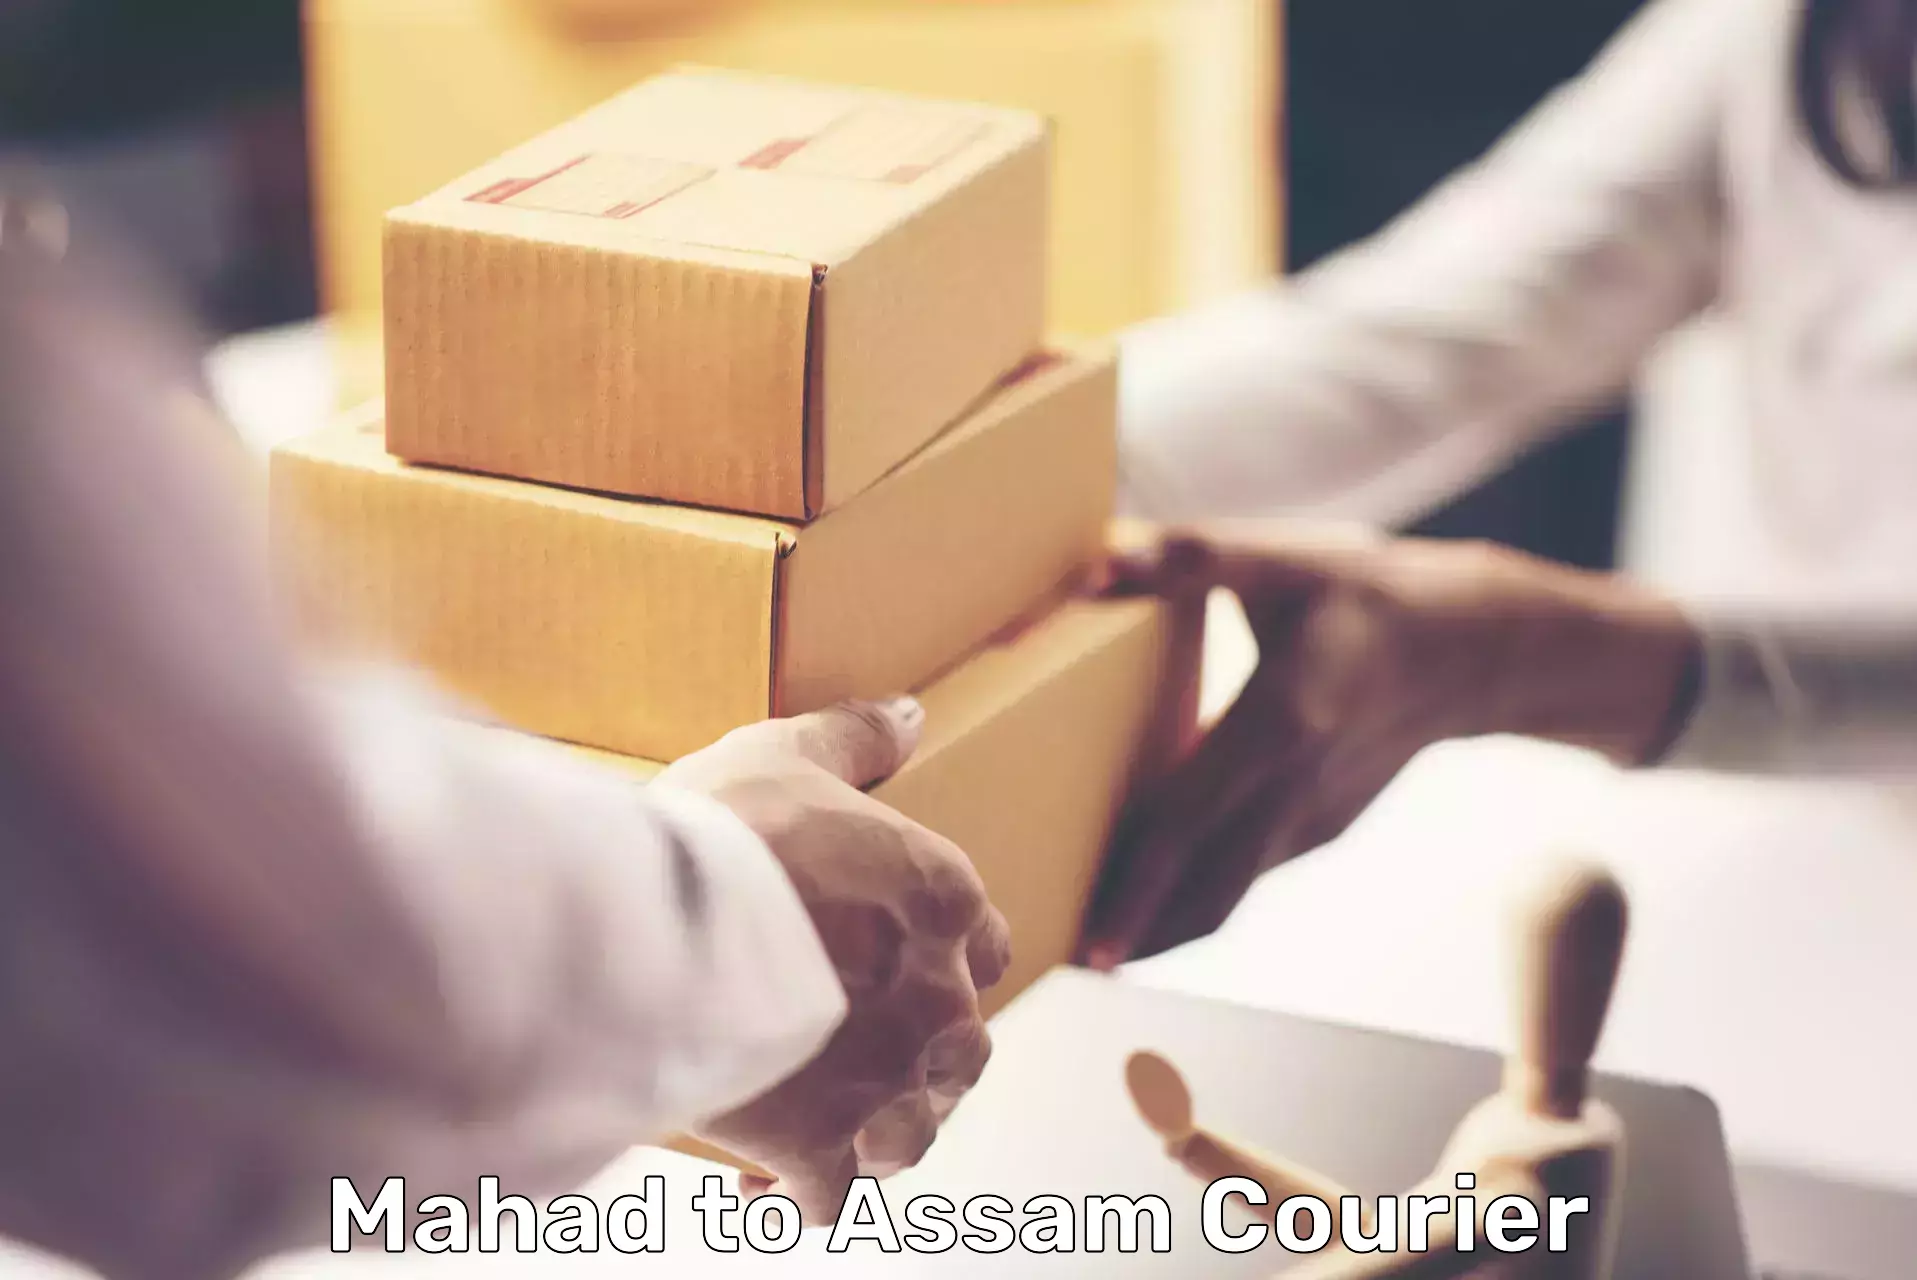 Affordable international shipping Mahad to Mayang